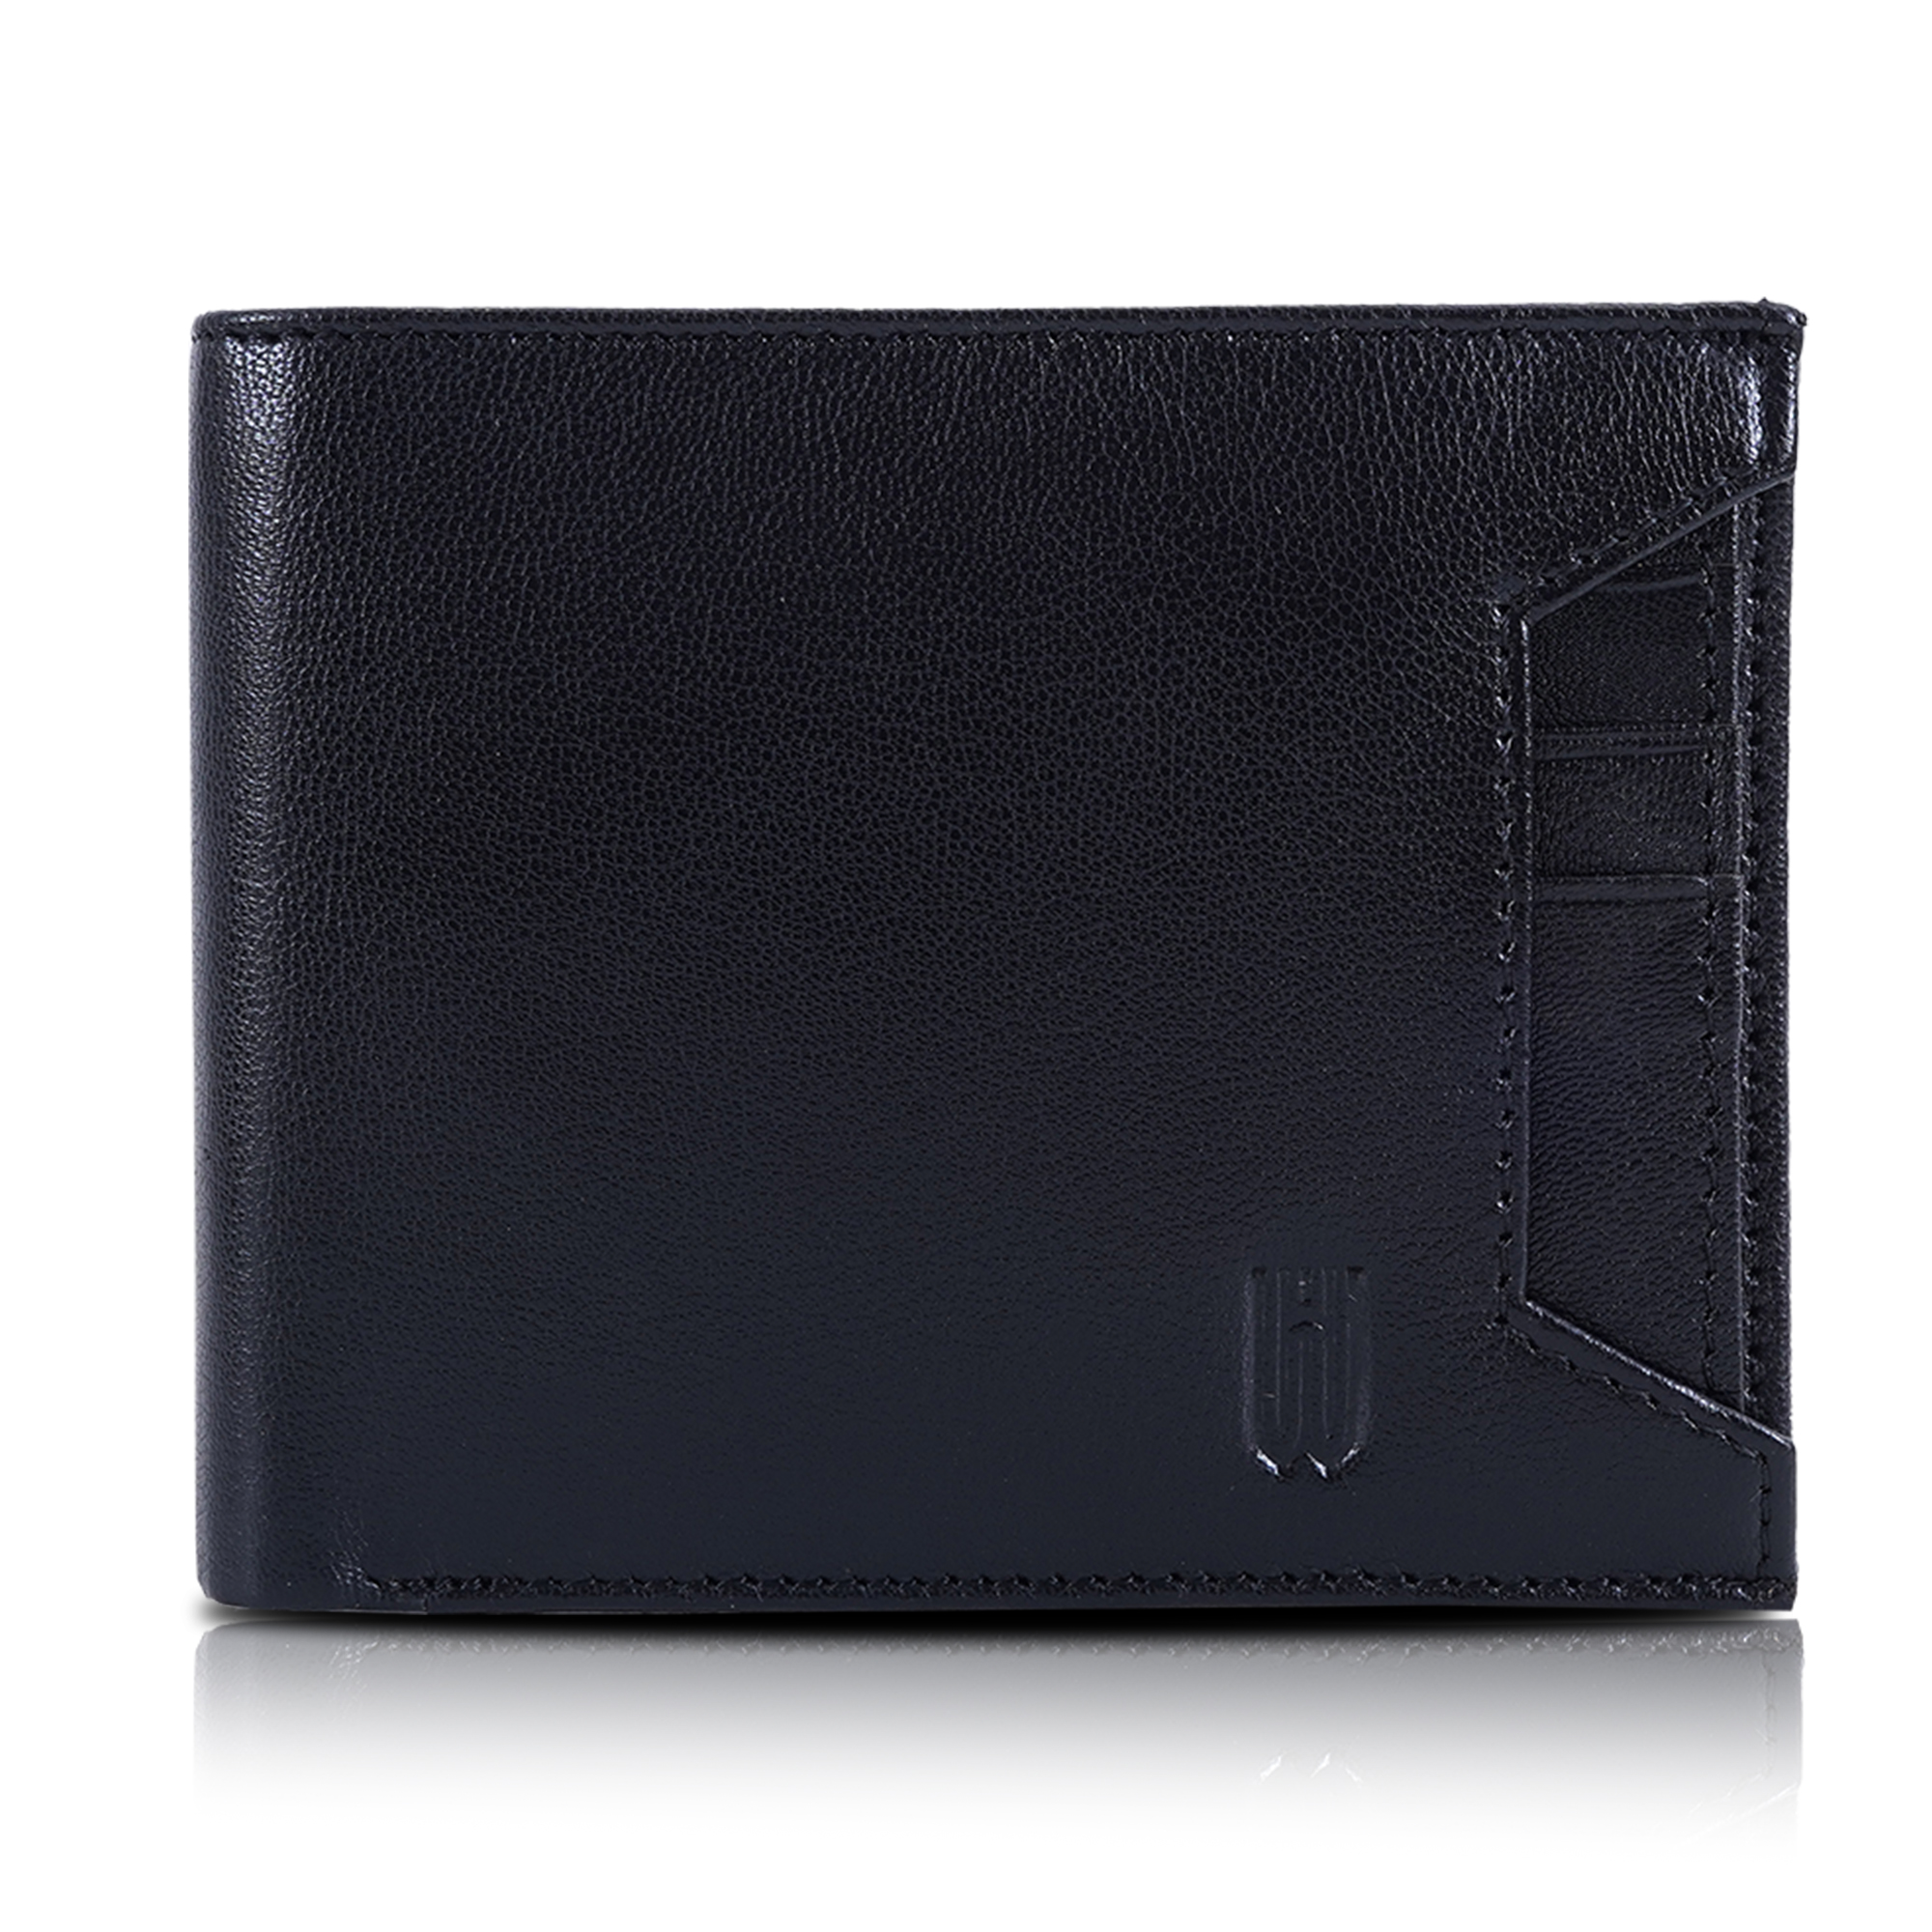 Leather Belt Wallet Combo For Men Black-asset-681